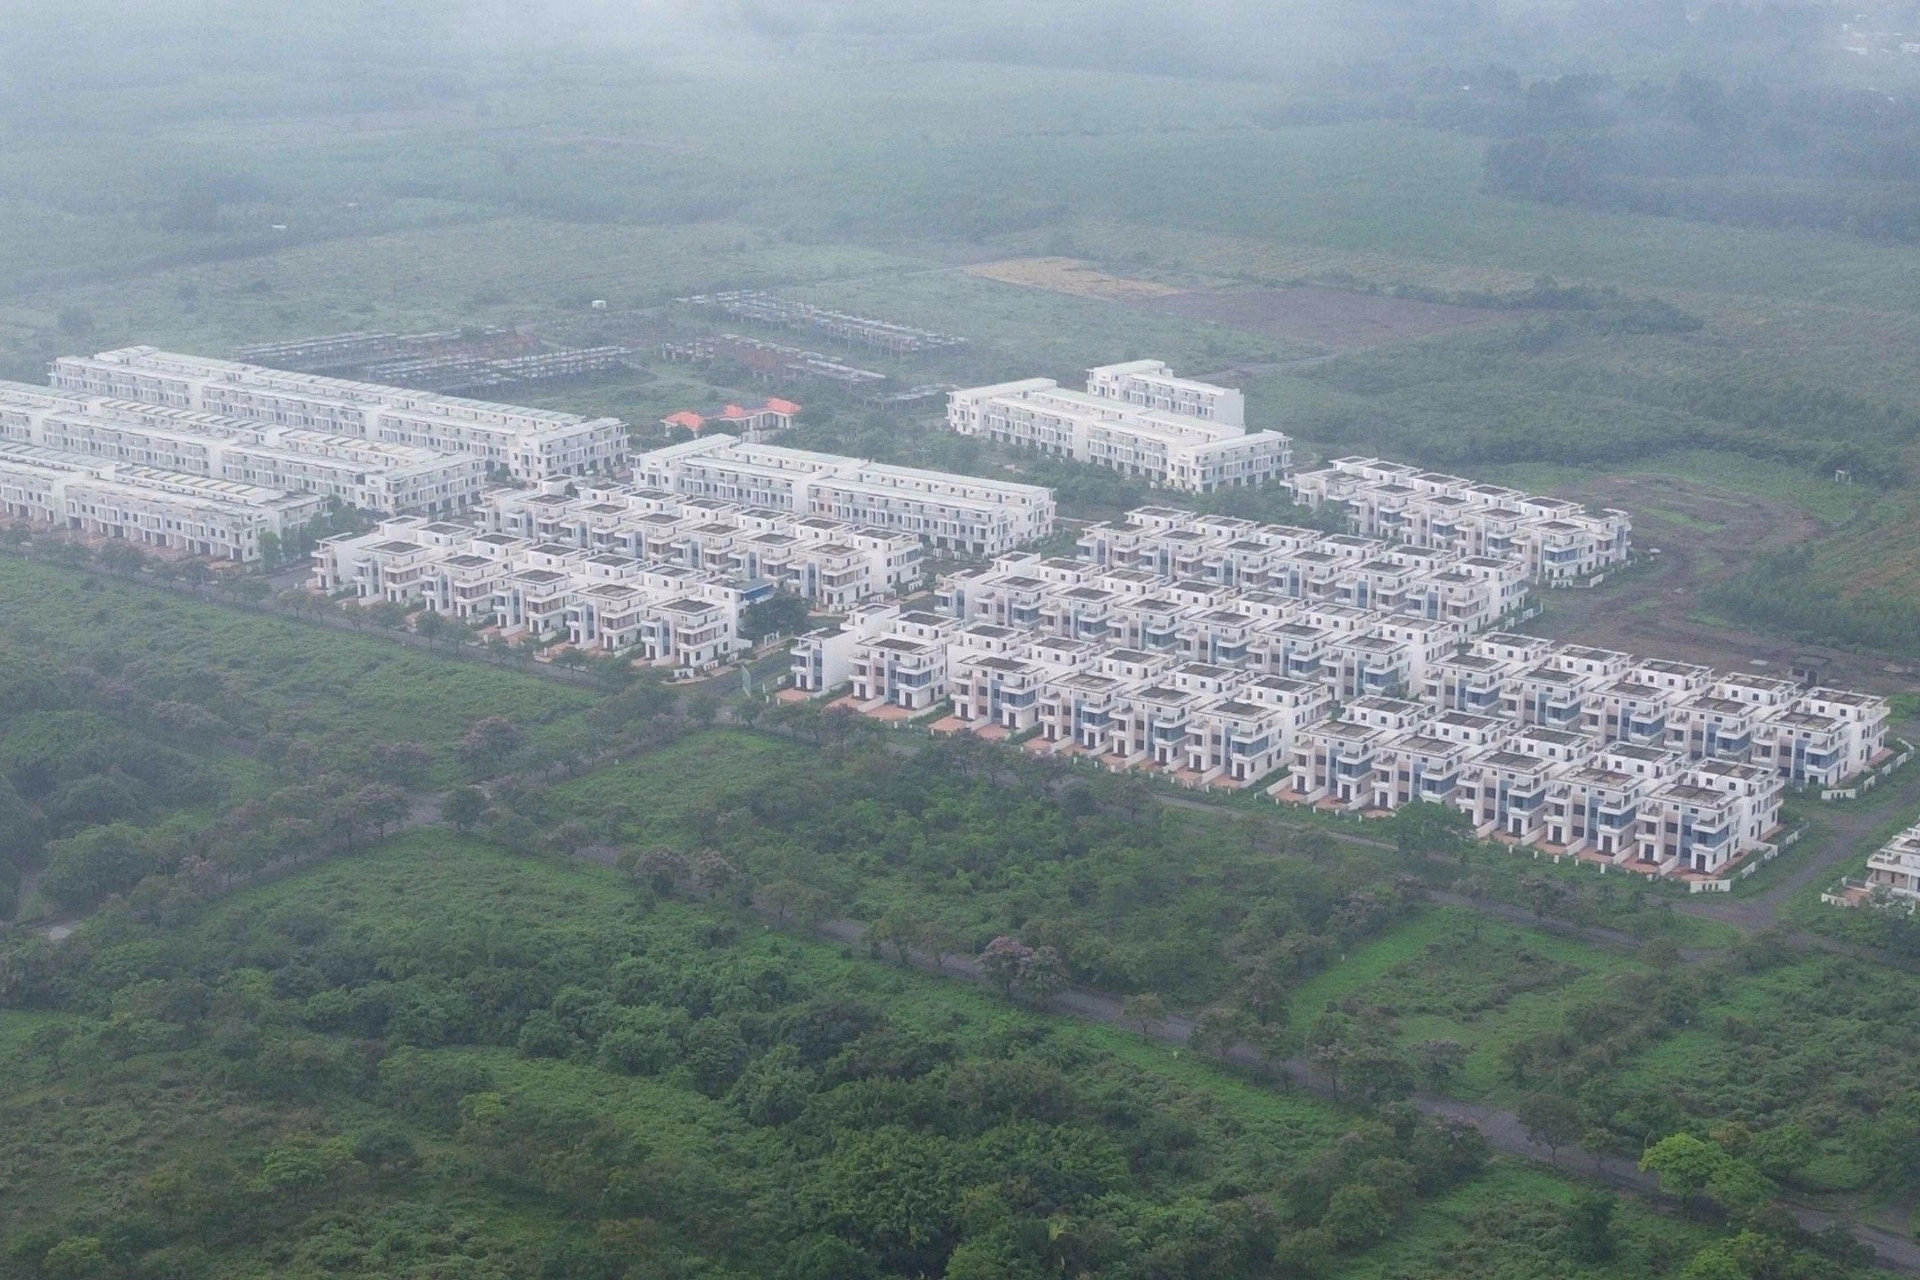 Khu dân cư Tân Thịnh huyện Trảng Bom với 680 căn biệt thự, nhà liền kề xây trái phép (Ảnh: Hoàng Bình).